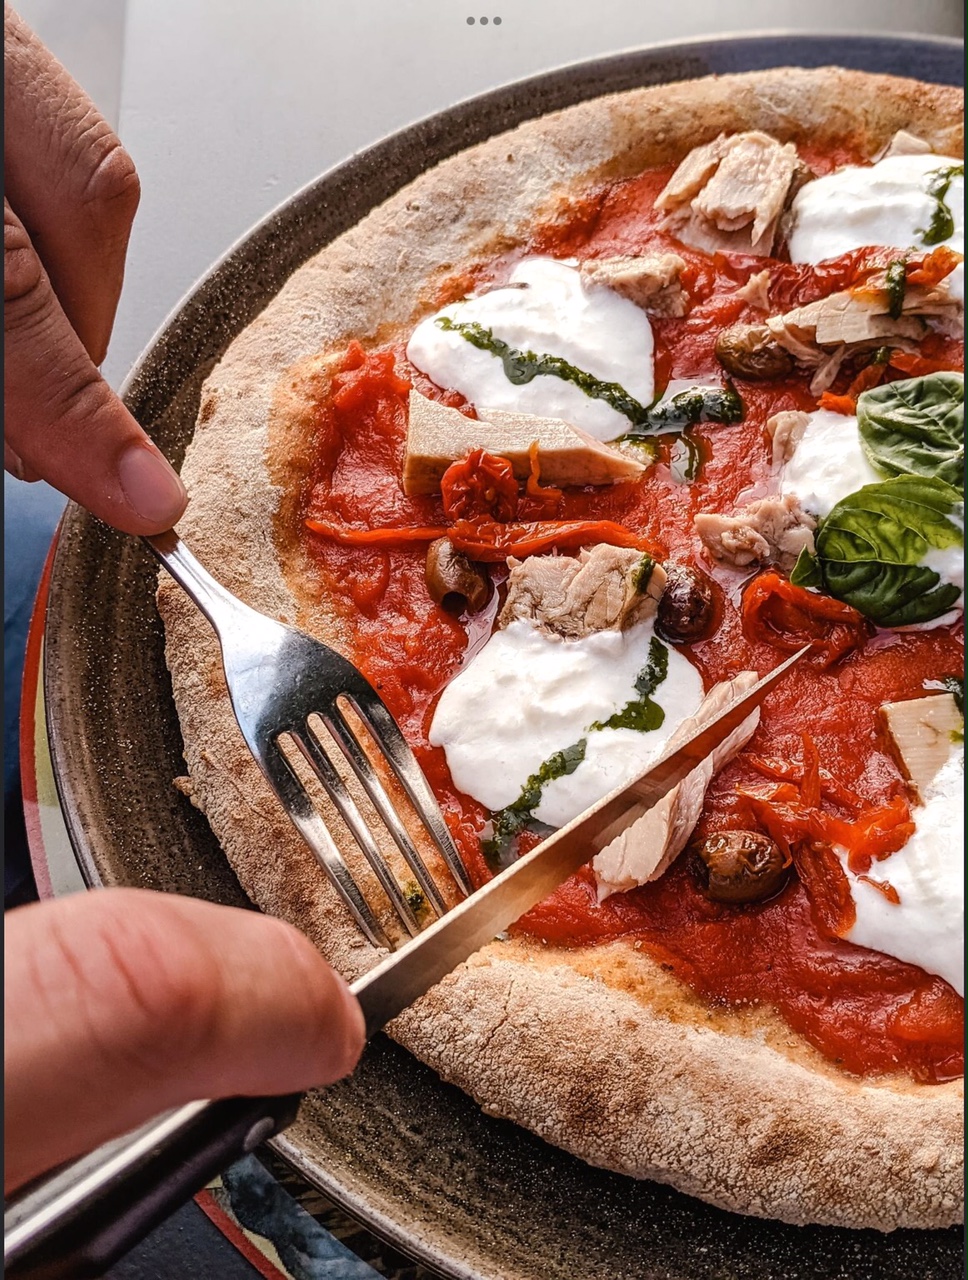 Mentre impazza l’affaire “Pizza & Briatore”, se volete degustare pizze (gourmet e non solo), cocktail e un fritto misto alla napoletana, a Crema, l’Anima Romita è apertissima…